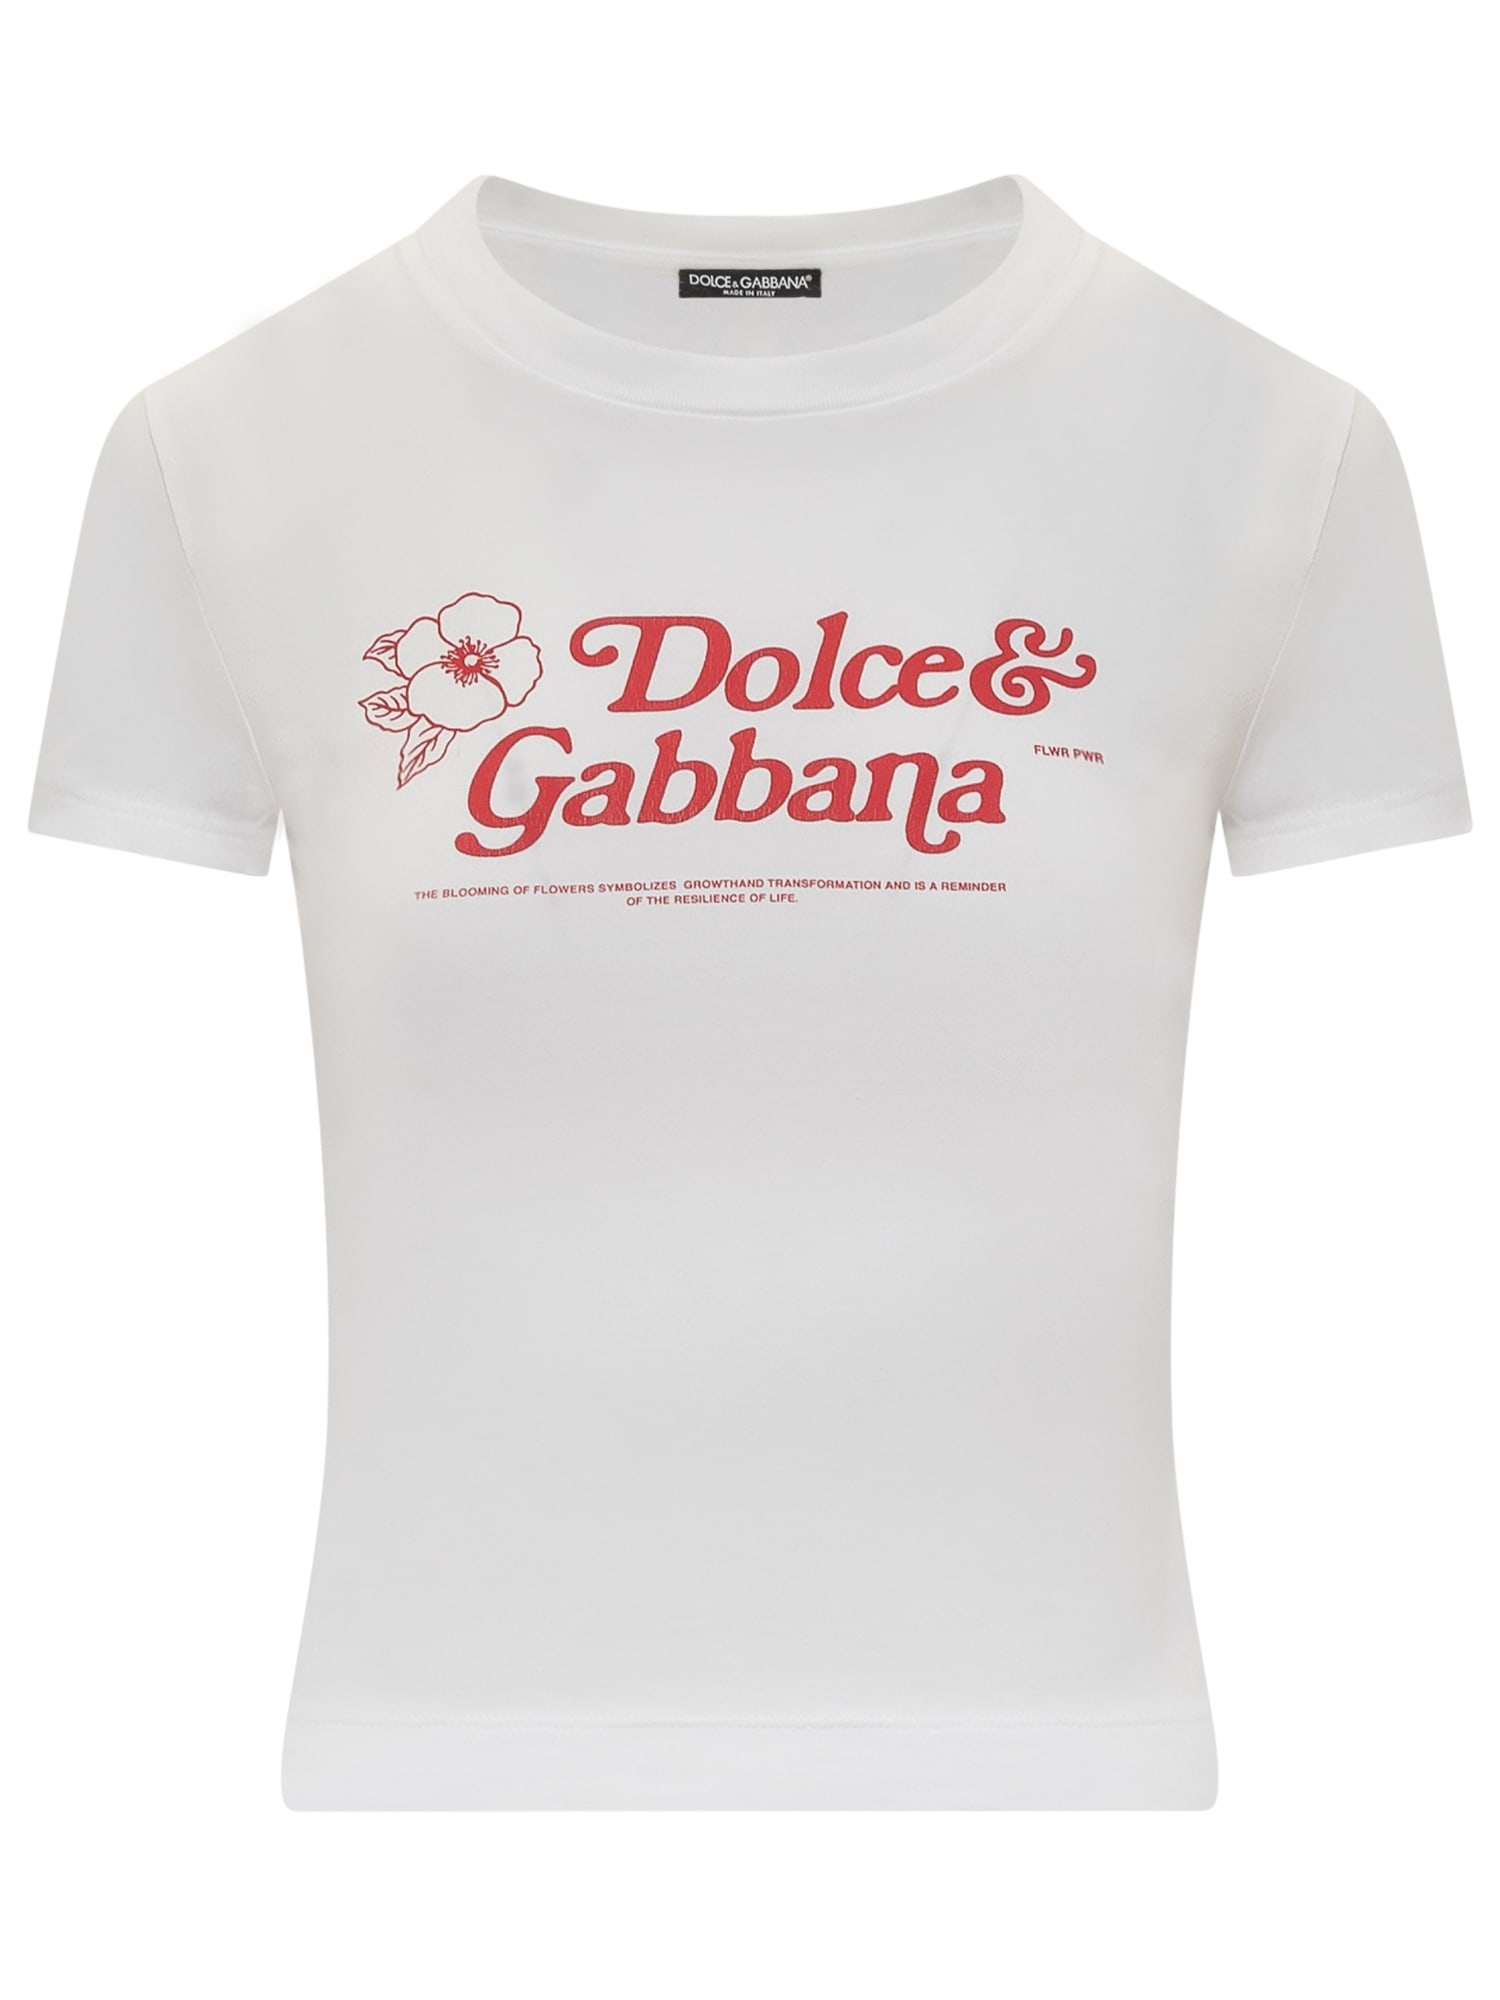 DOLCE & GABBANA LOGO T-SHIRT